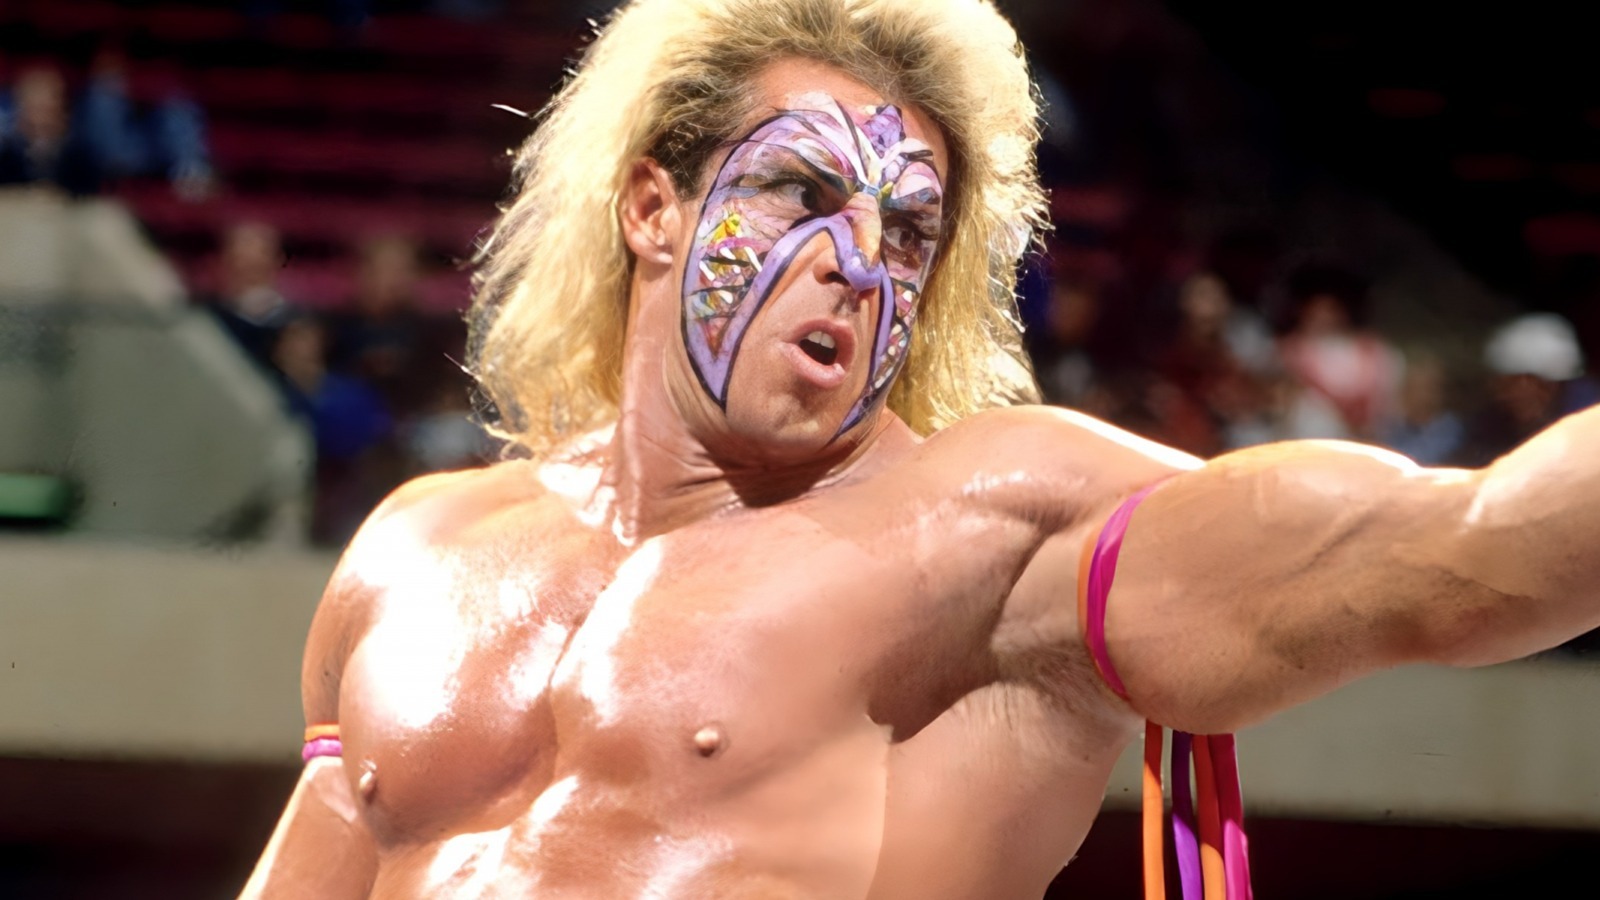 Greg Valentine, miembro de WWE HOF, sobre trabajar con Ultimate Warrior: 'Era jodidamente horrible'